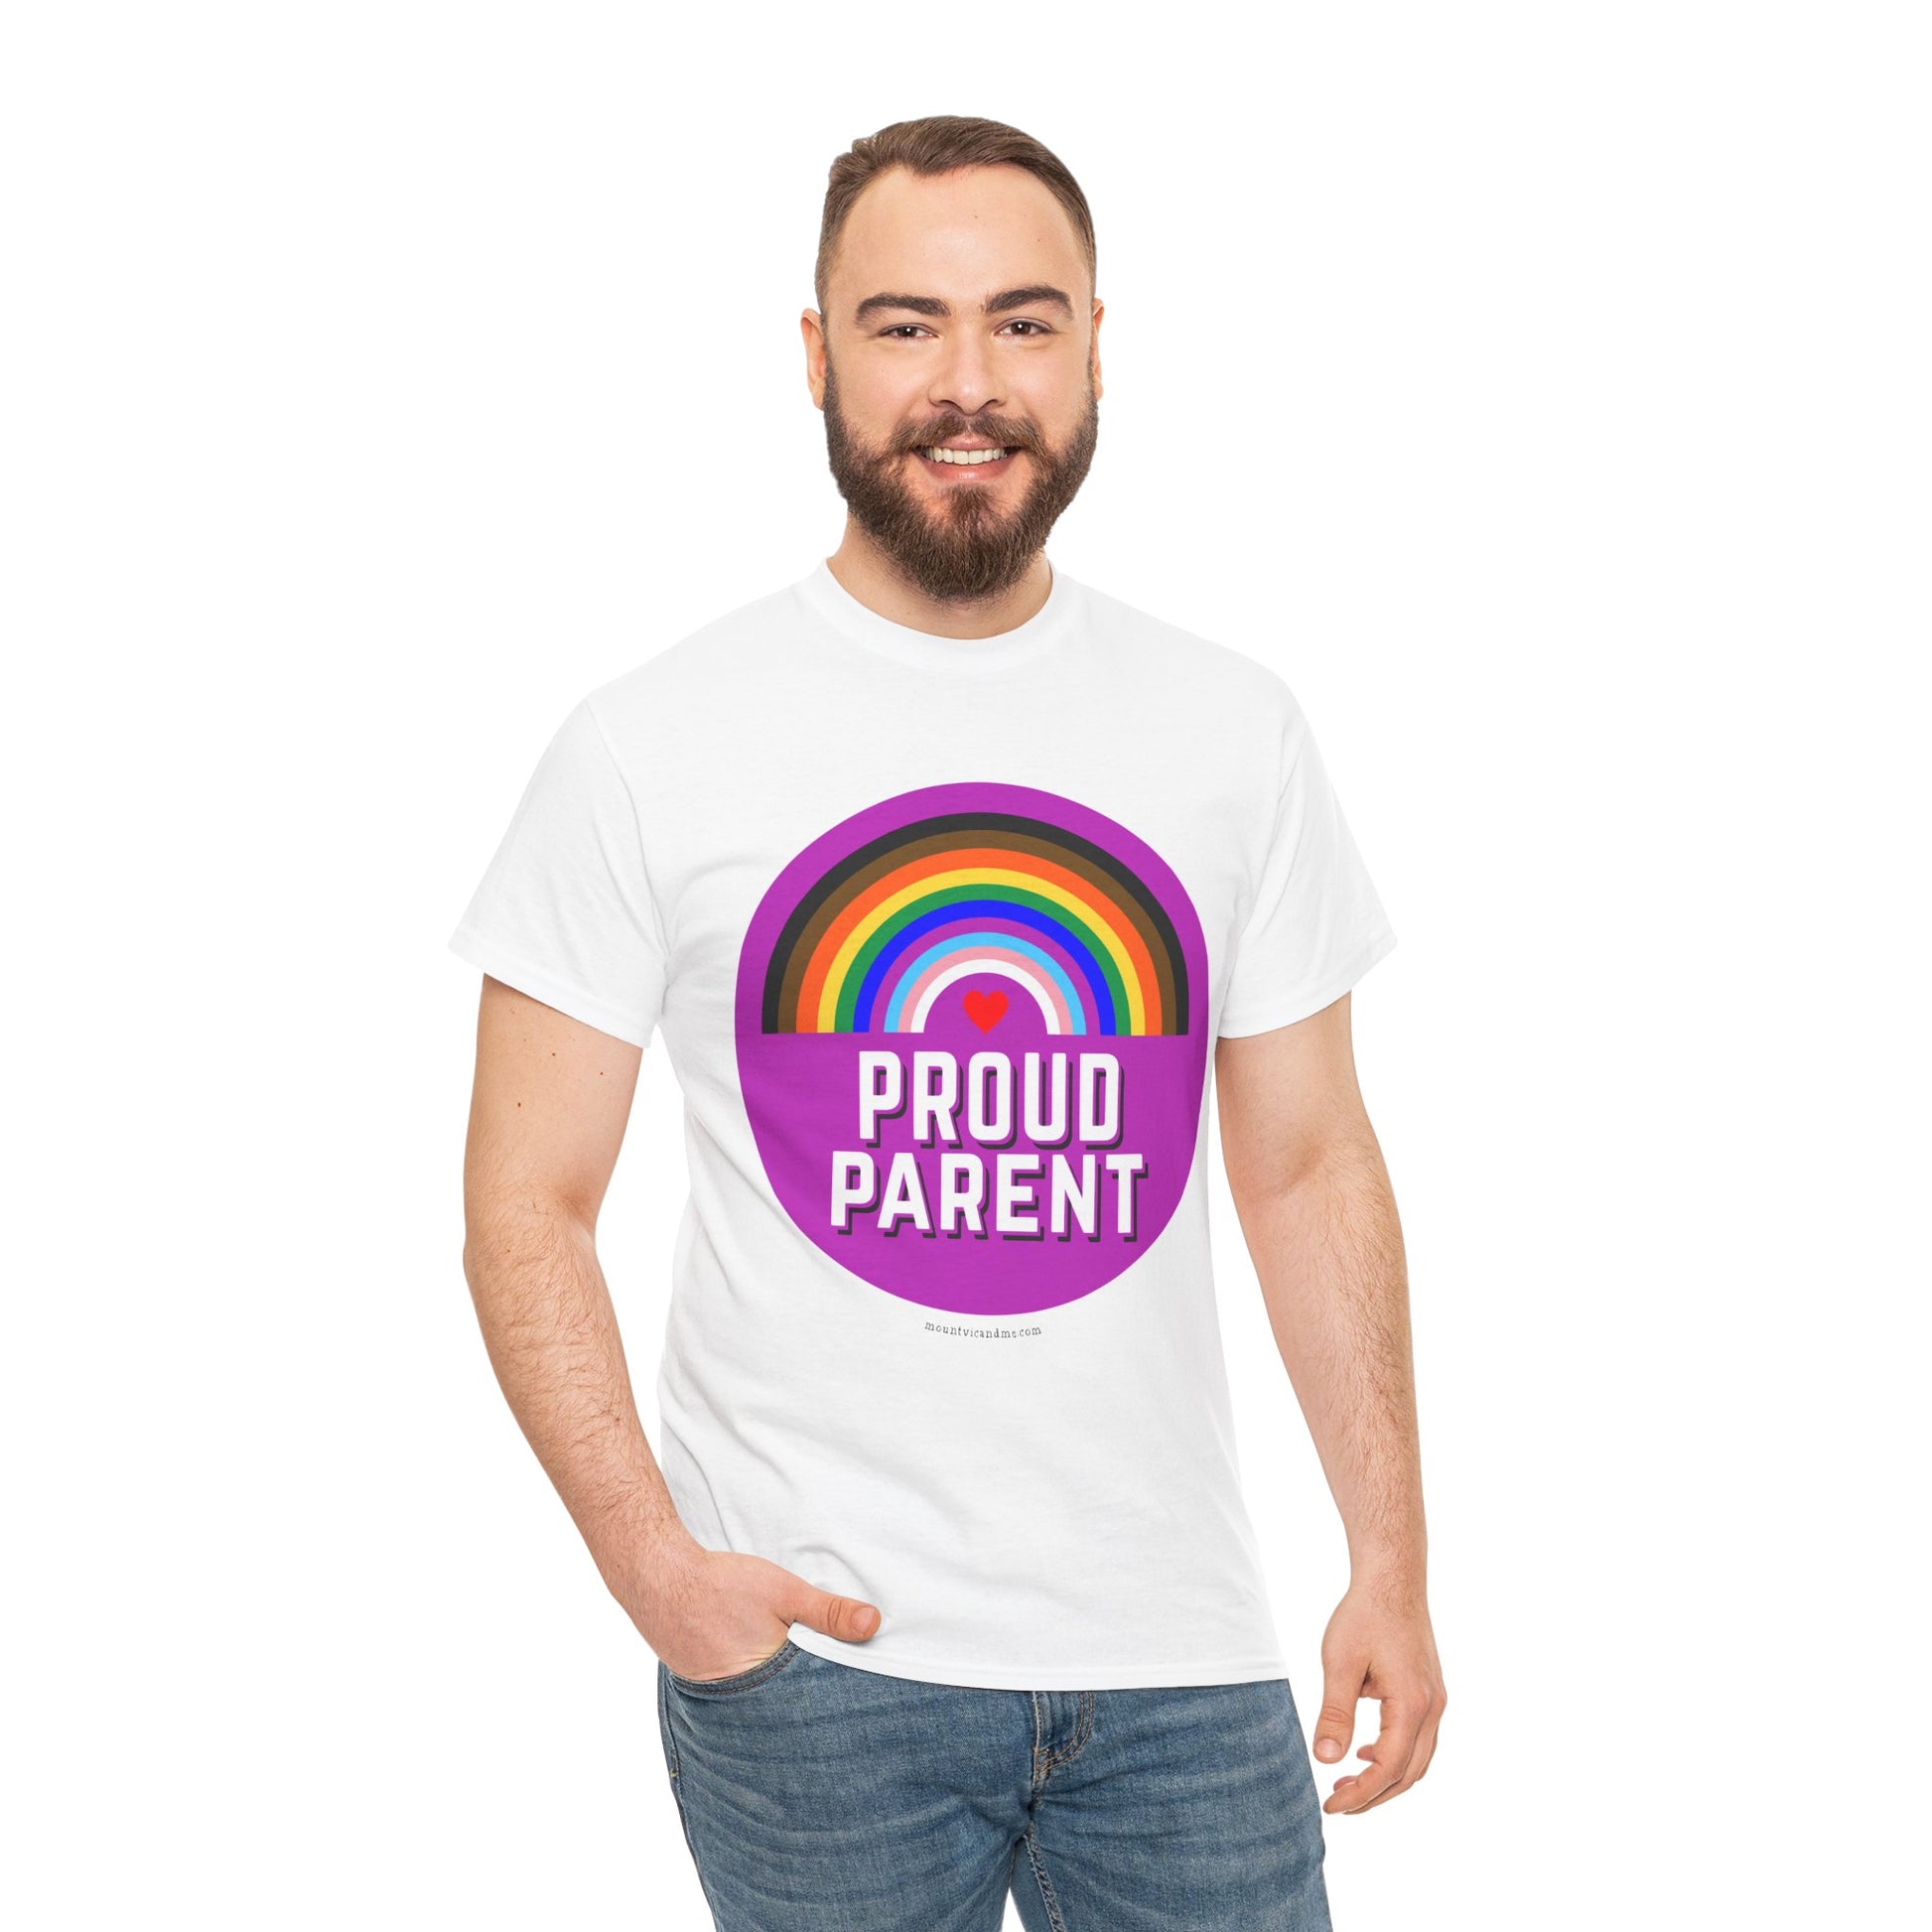 Proud Parent classic cotton t shirt